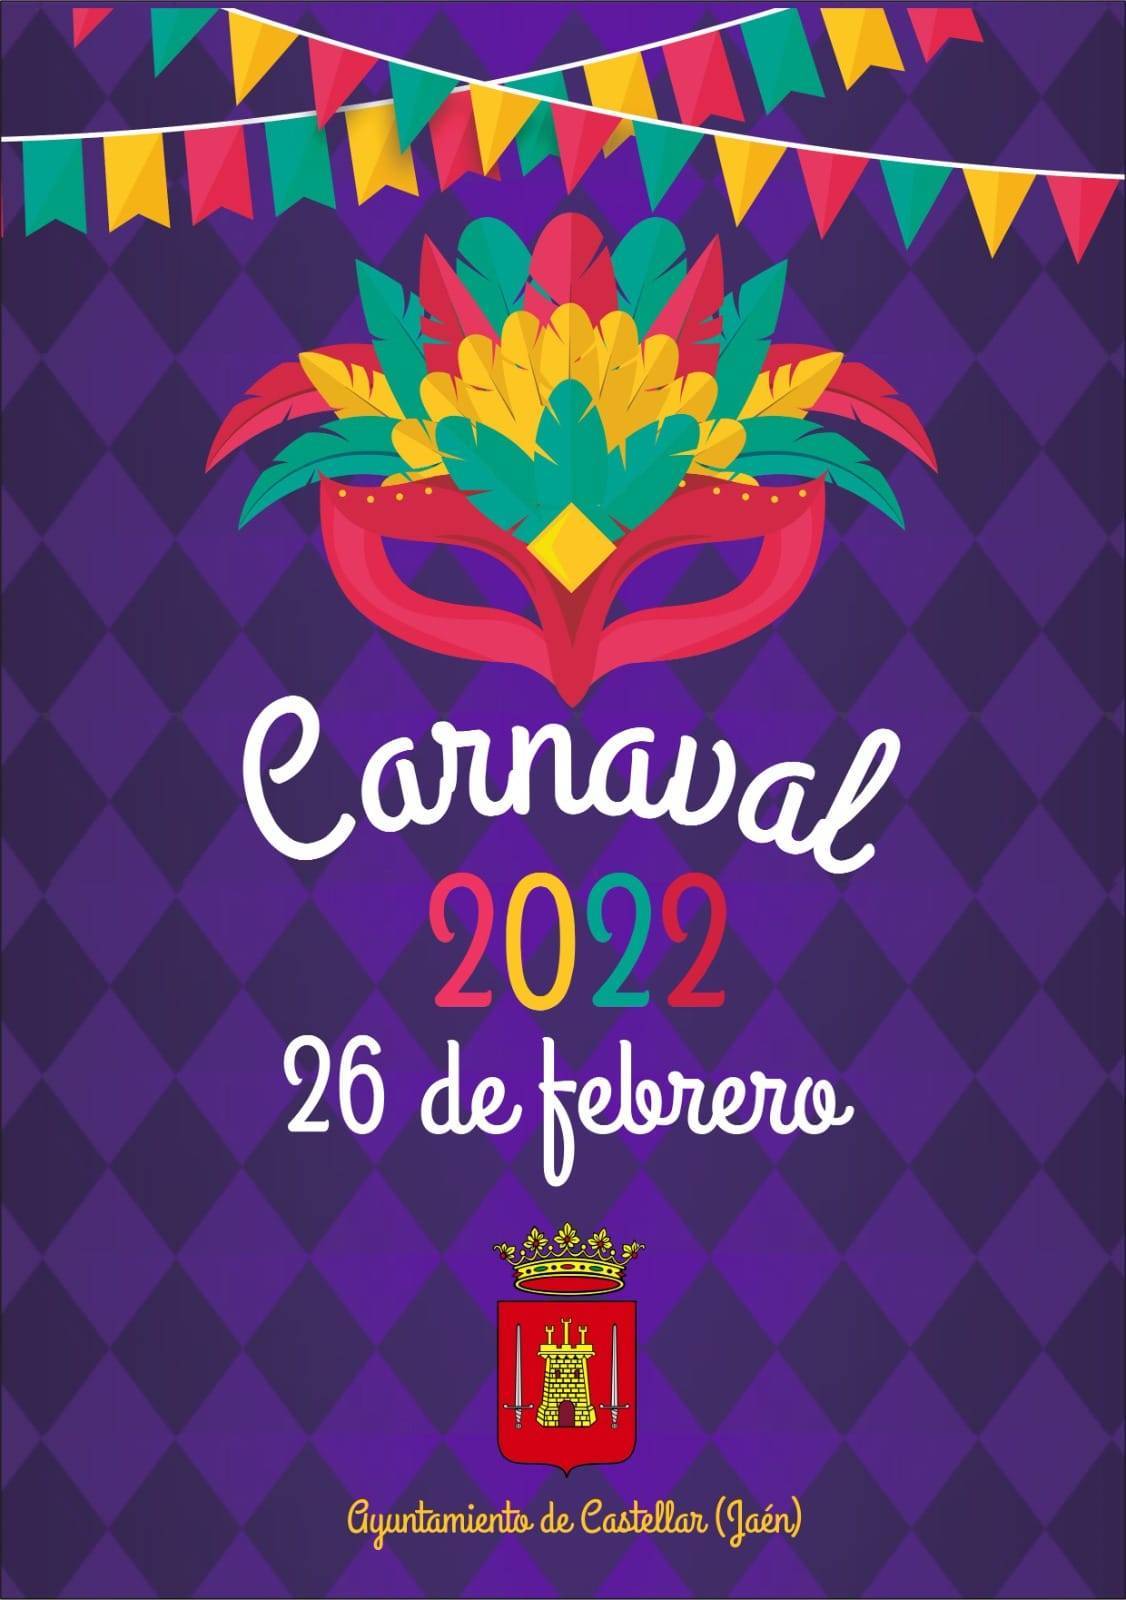 Carnaval (2022) - Castellar (Jaén) 1